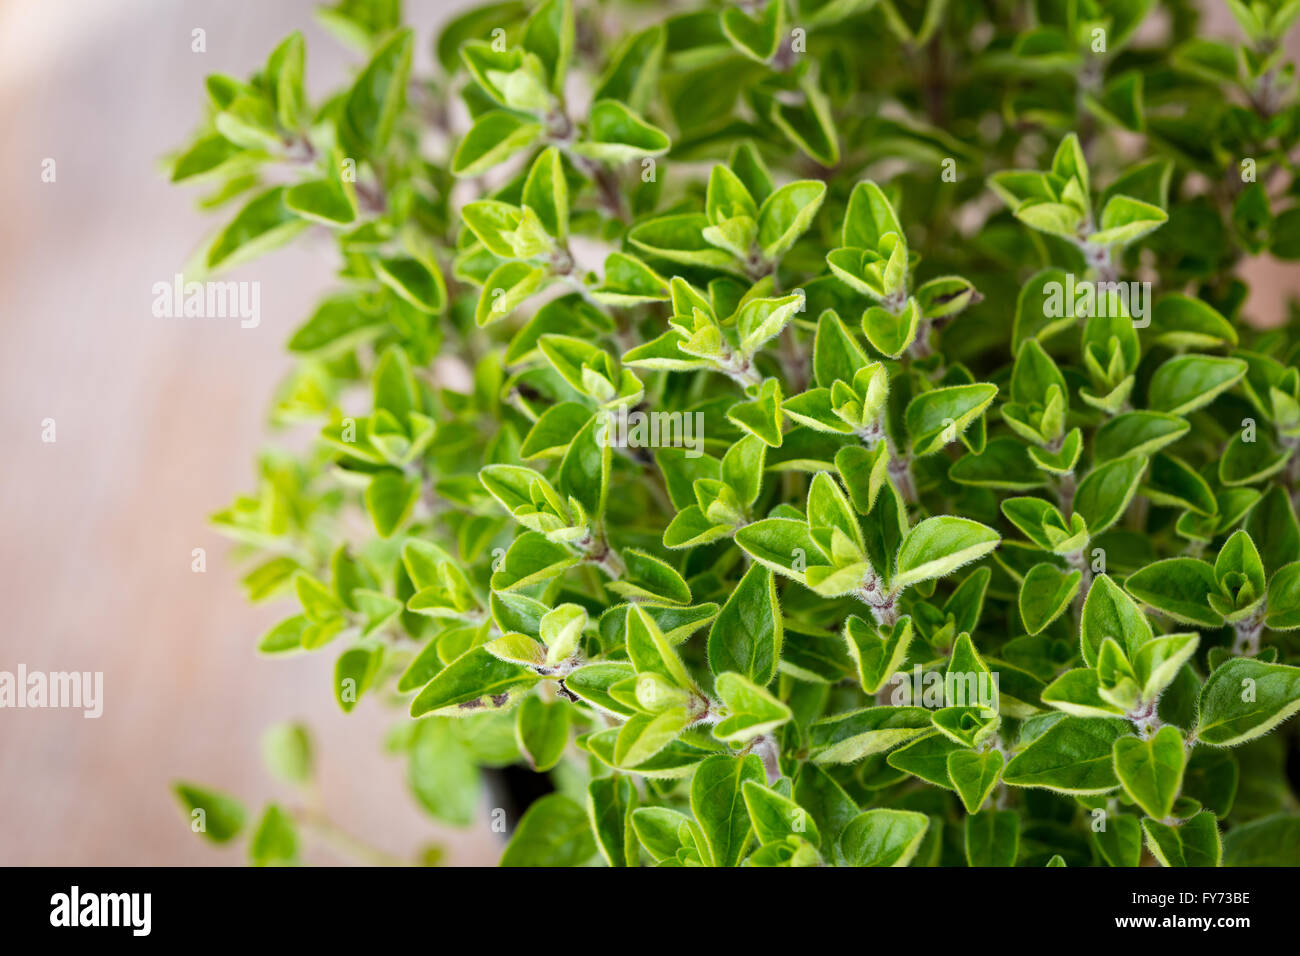 Fresh Oregano herbs in a garden pot Stock Photo